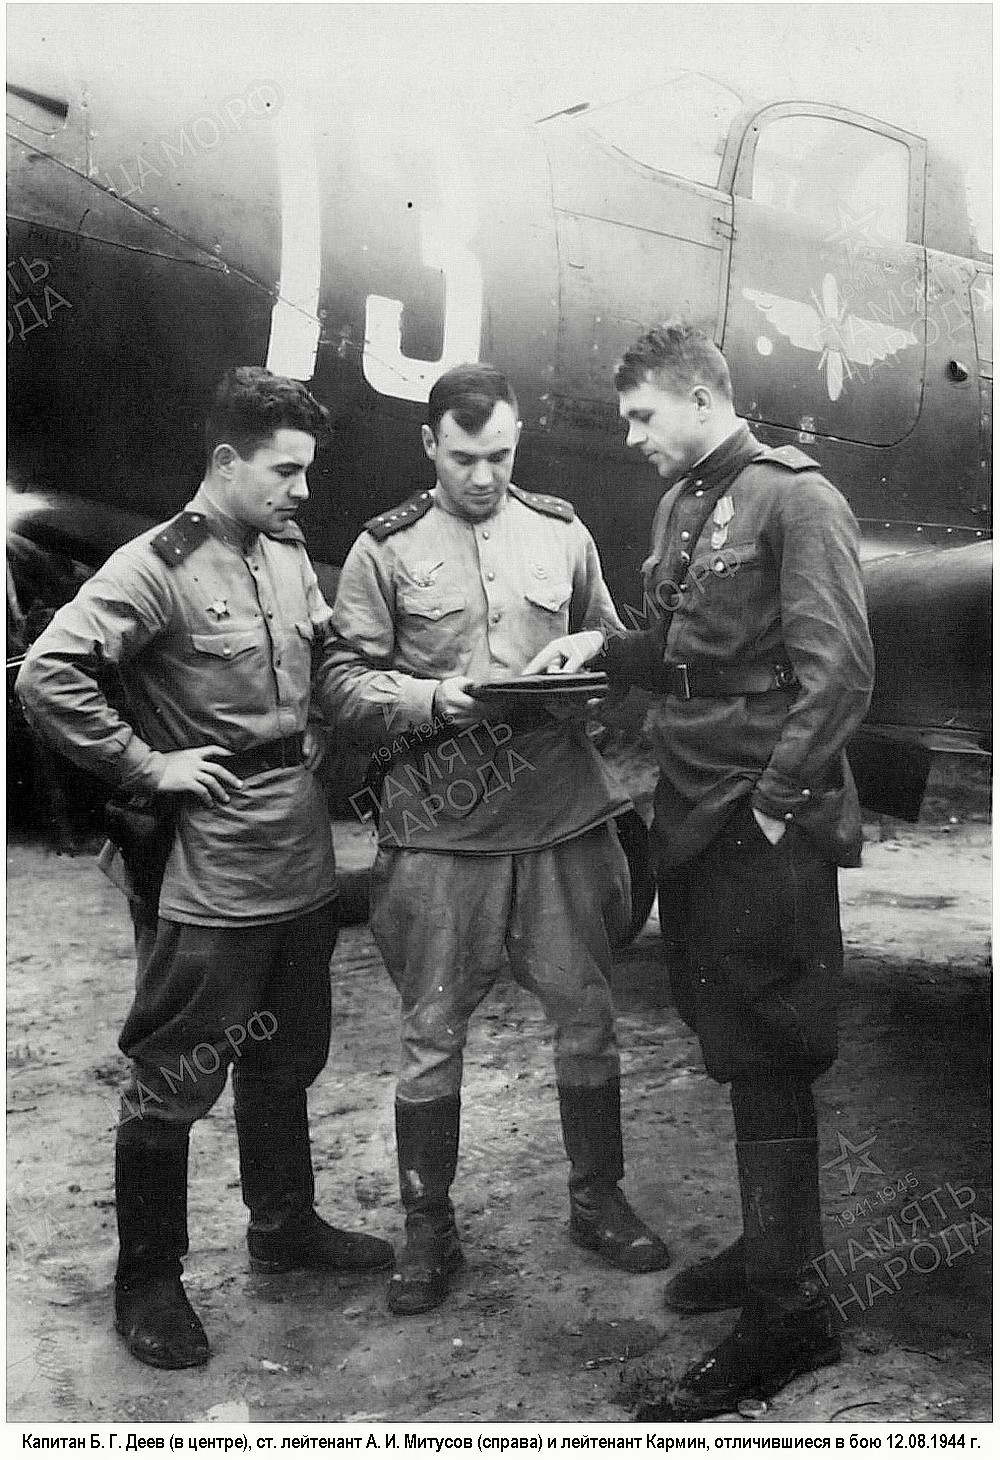 Митусов Алексей Иванович с товарищами, 1944 г.